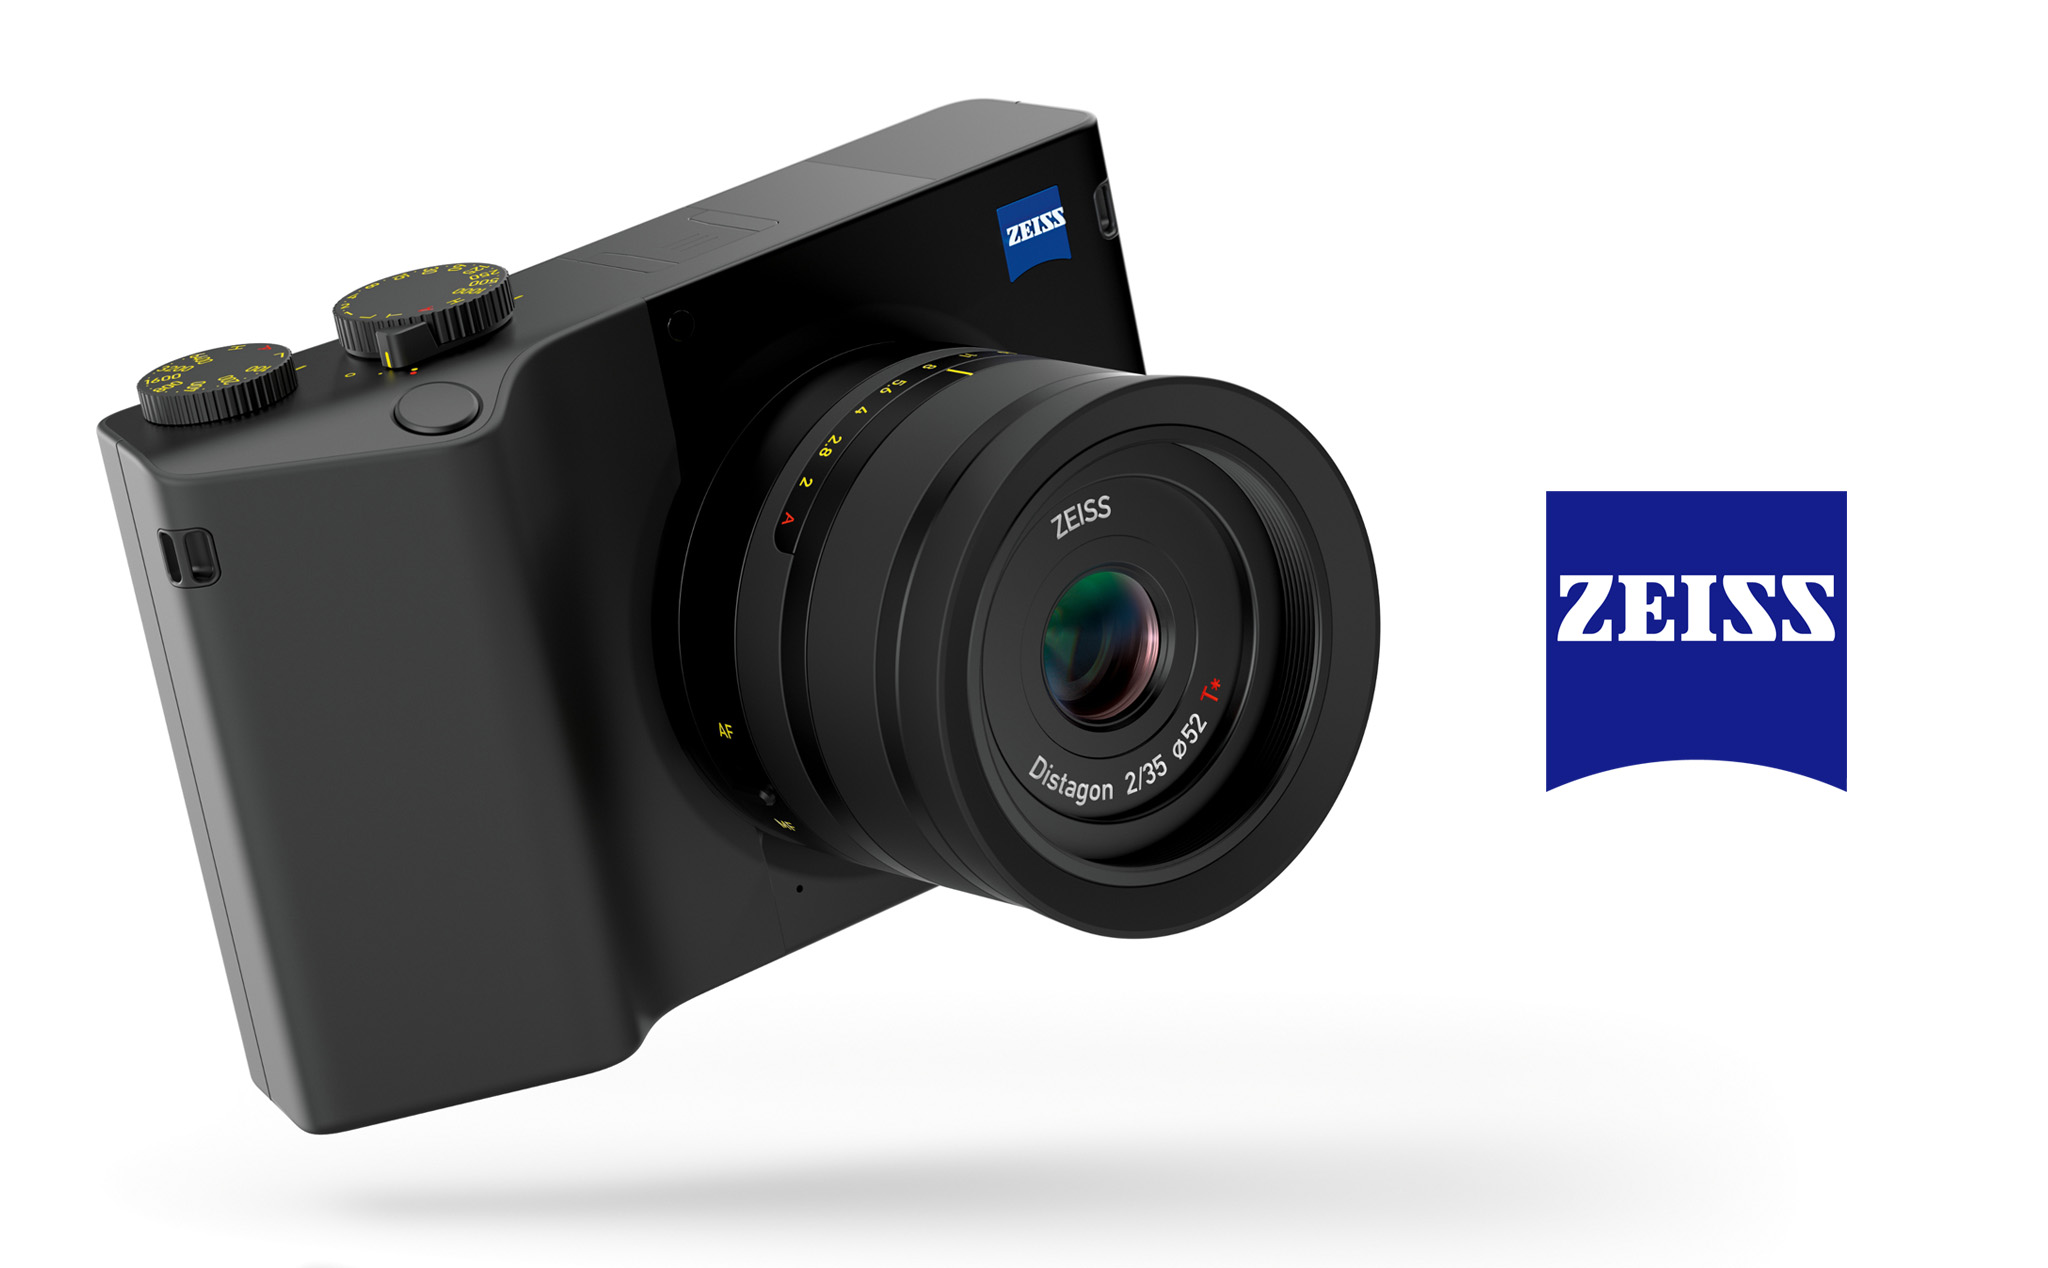 [Photokina 2018] Zeiss giới thiệu máy ảnh Fullframe Compact nhỏ gọn